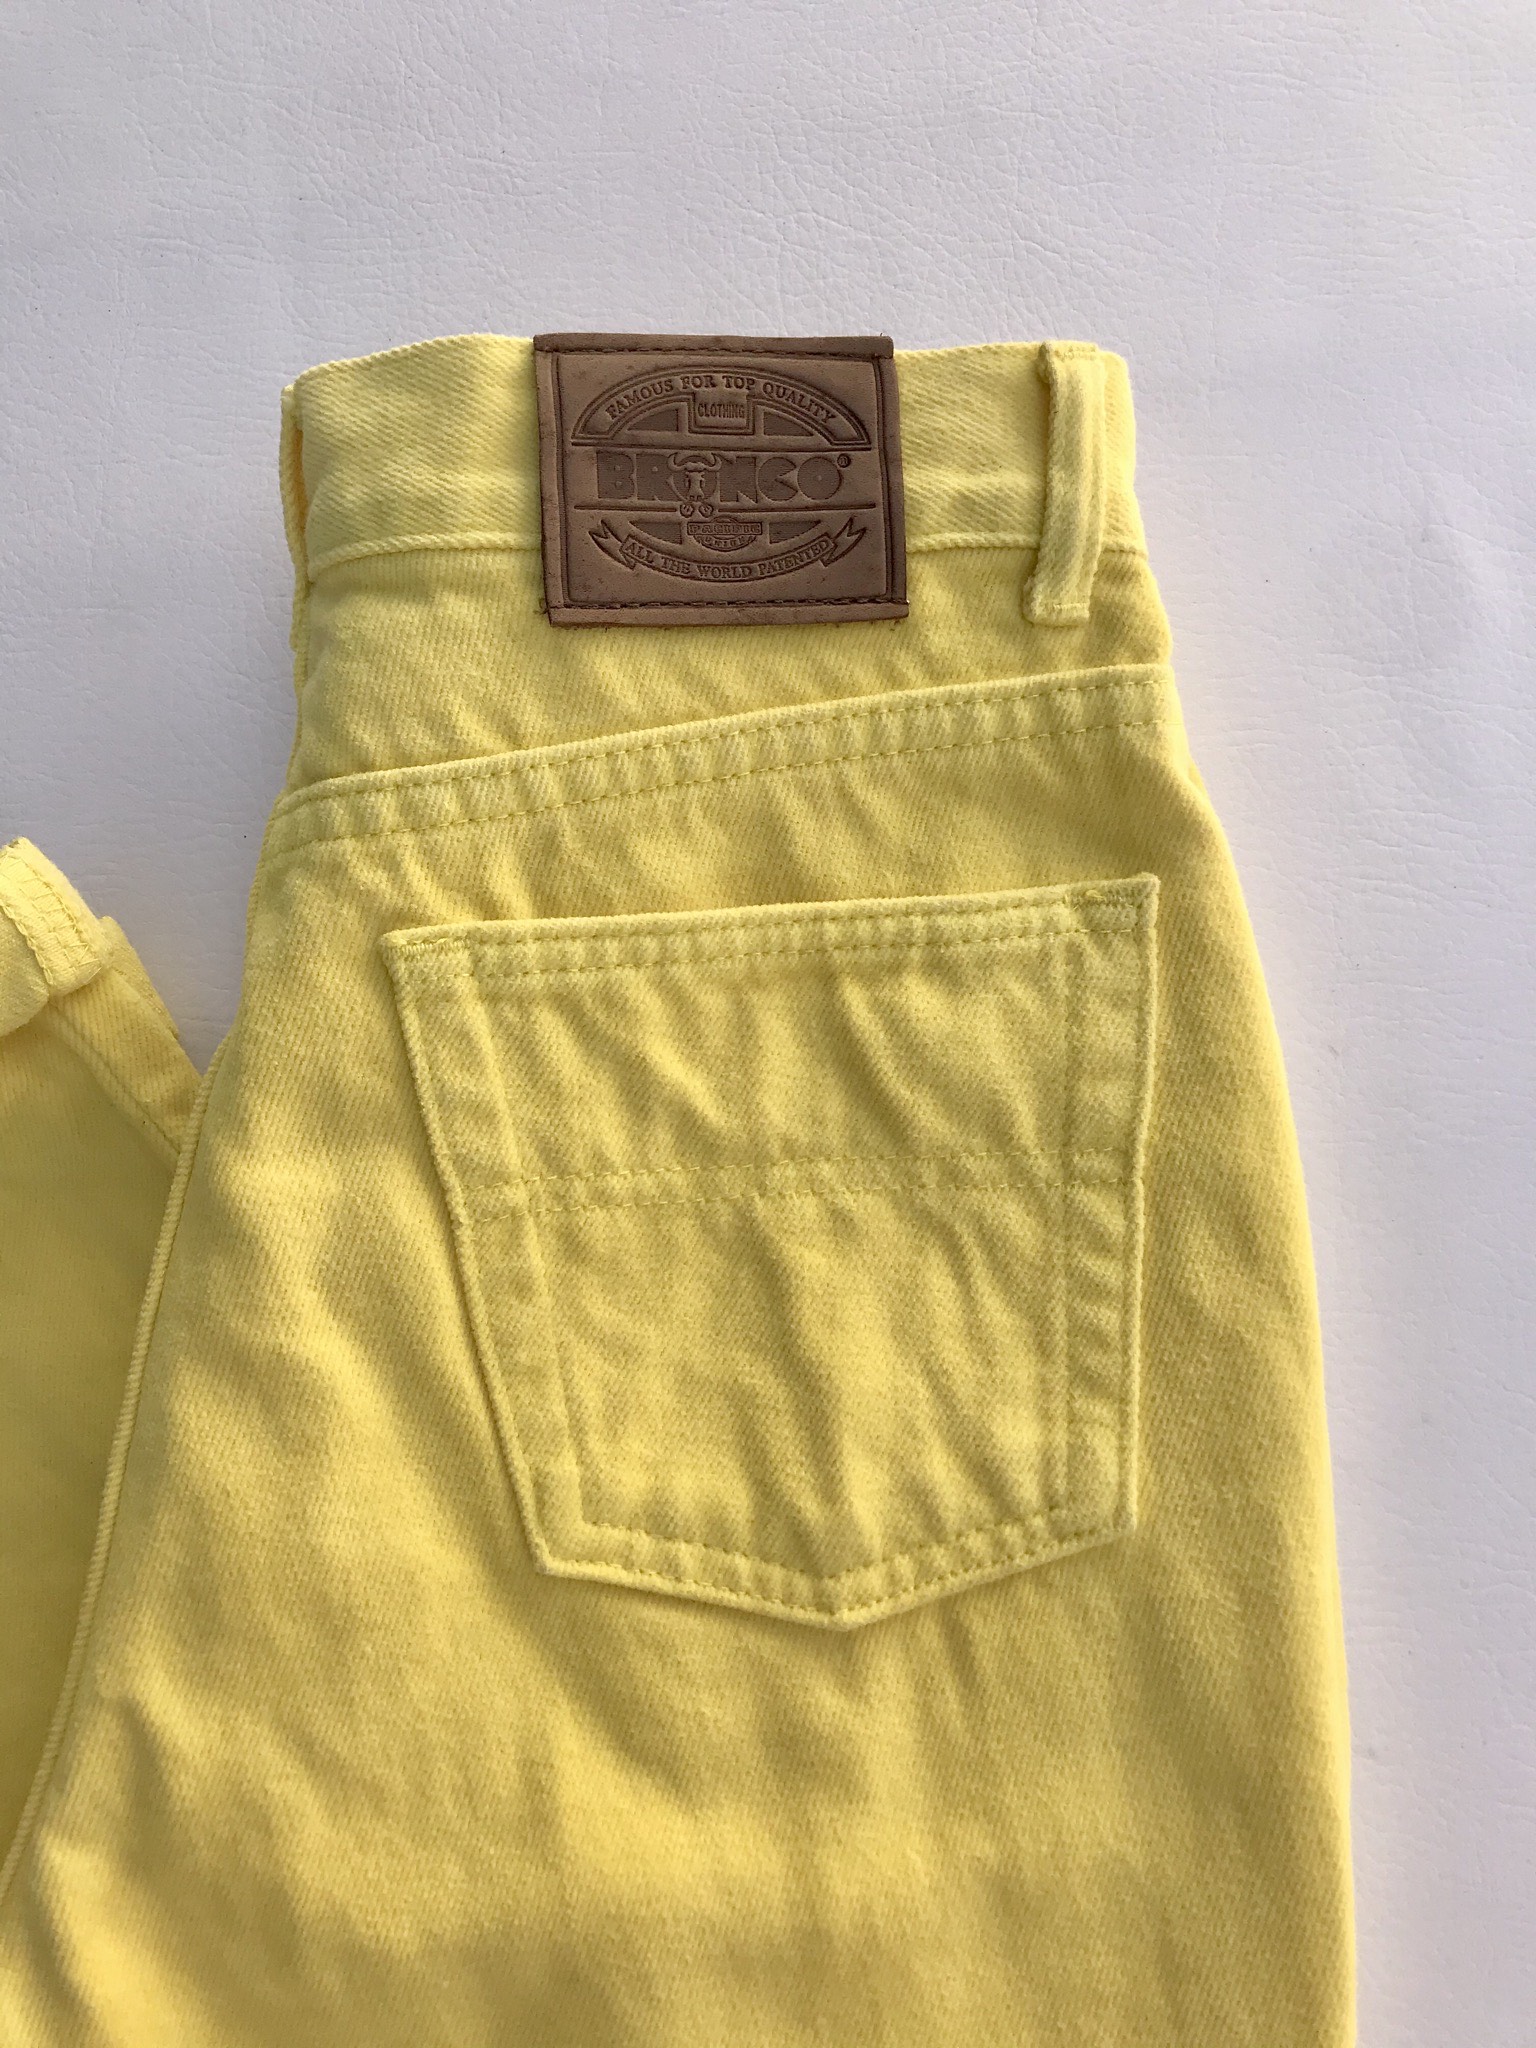 Mom jean Bronco vintage, a la cintura, 100% algodón amarillo, denim grueso,  5 bolsillos, cierre y botón metálico. ¡Super cool! Estado 8.5/10
Talla 28